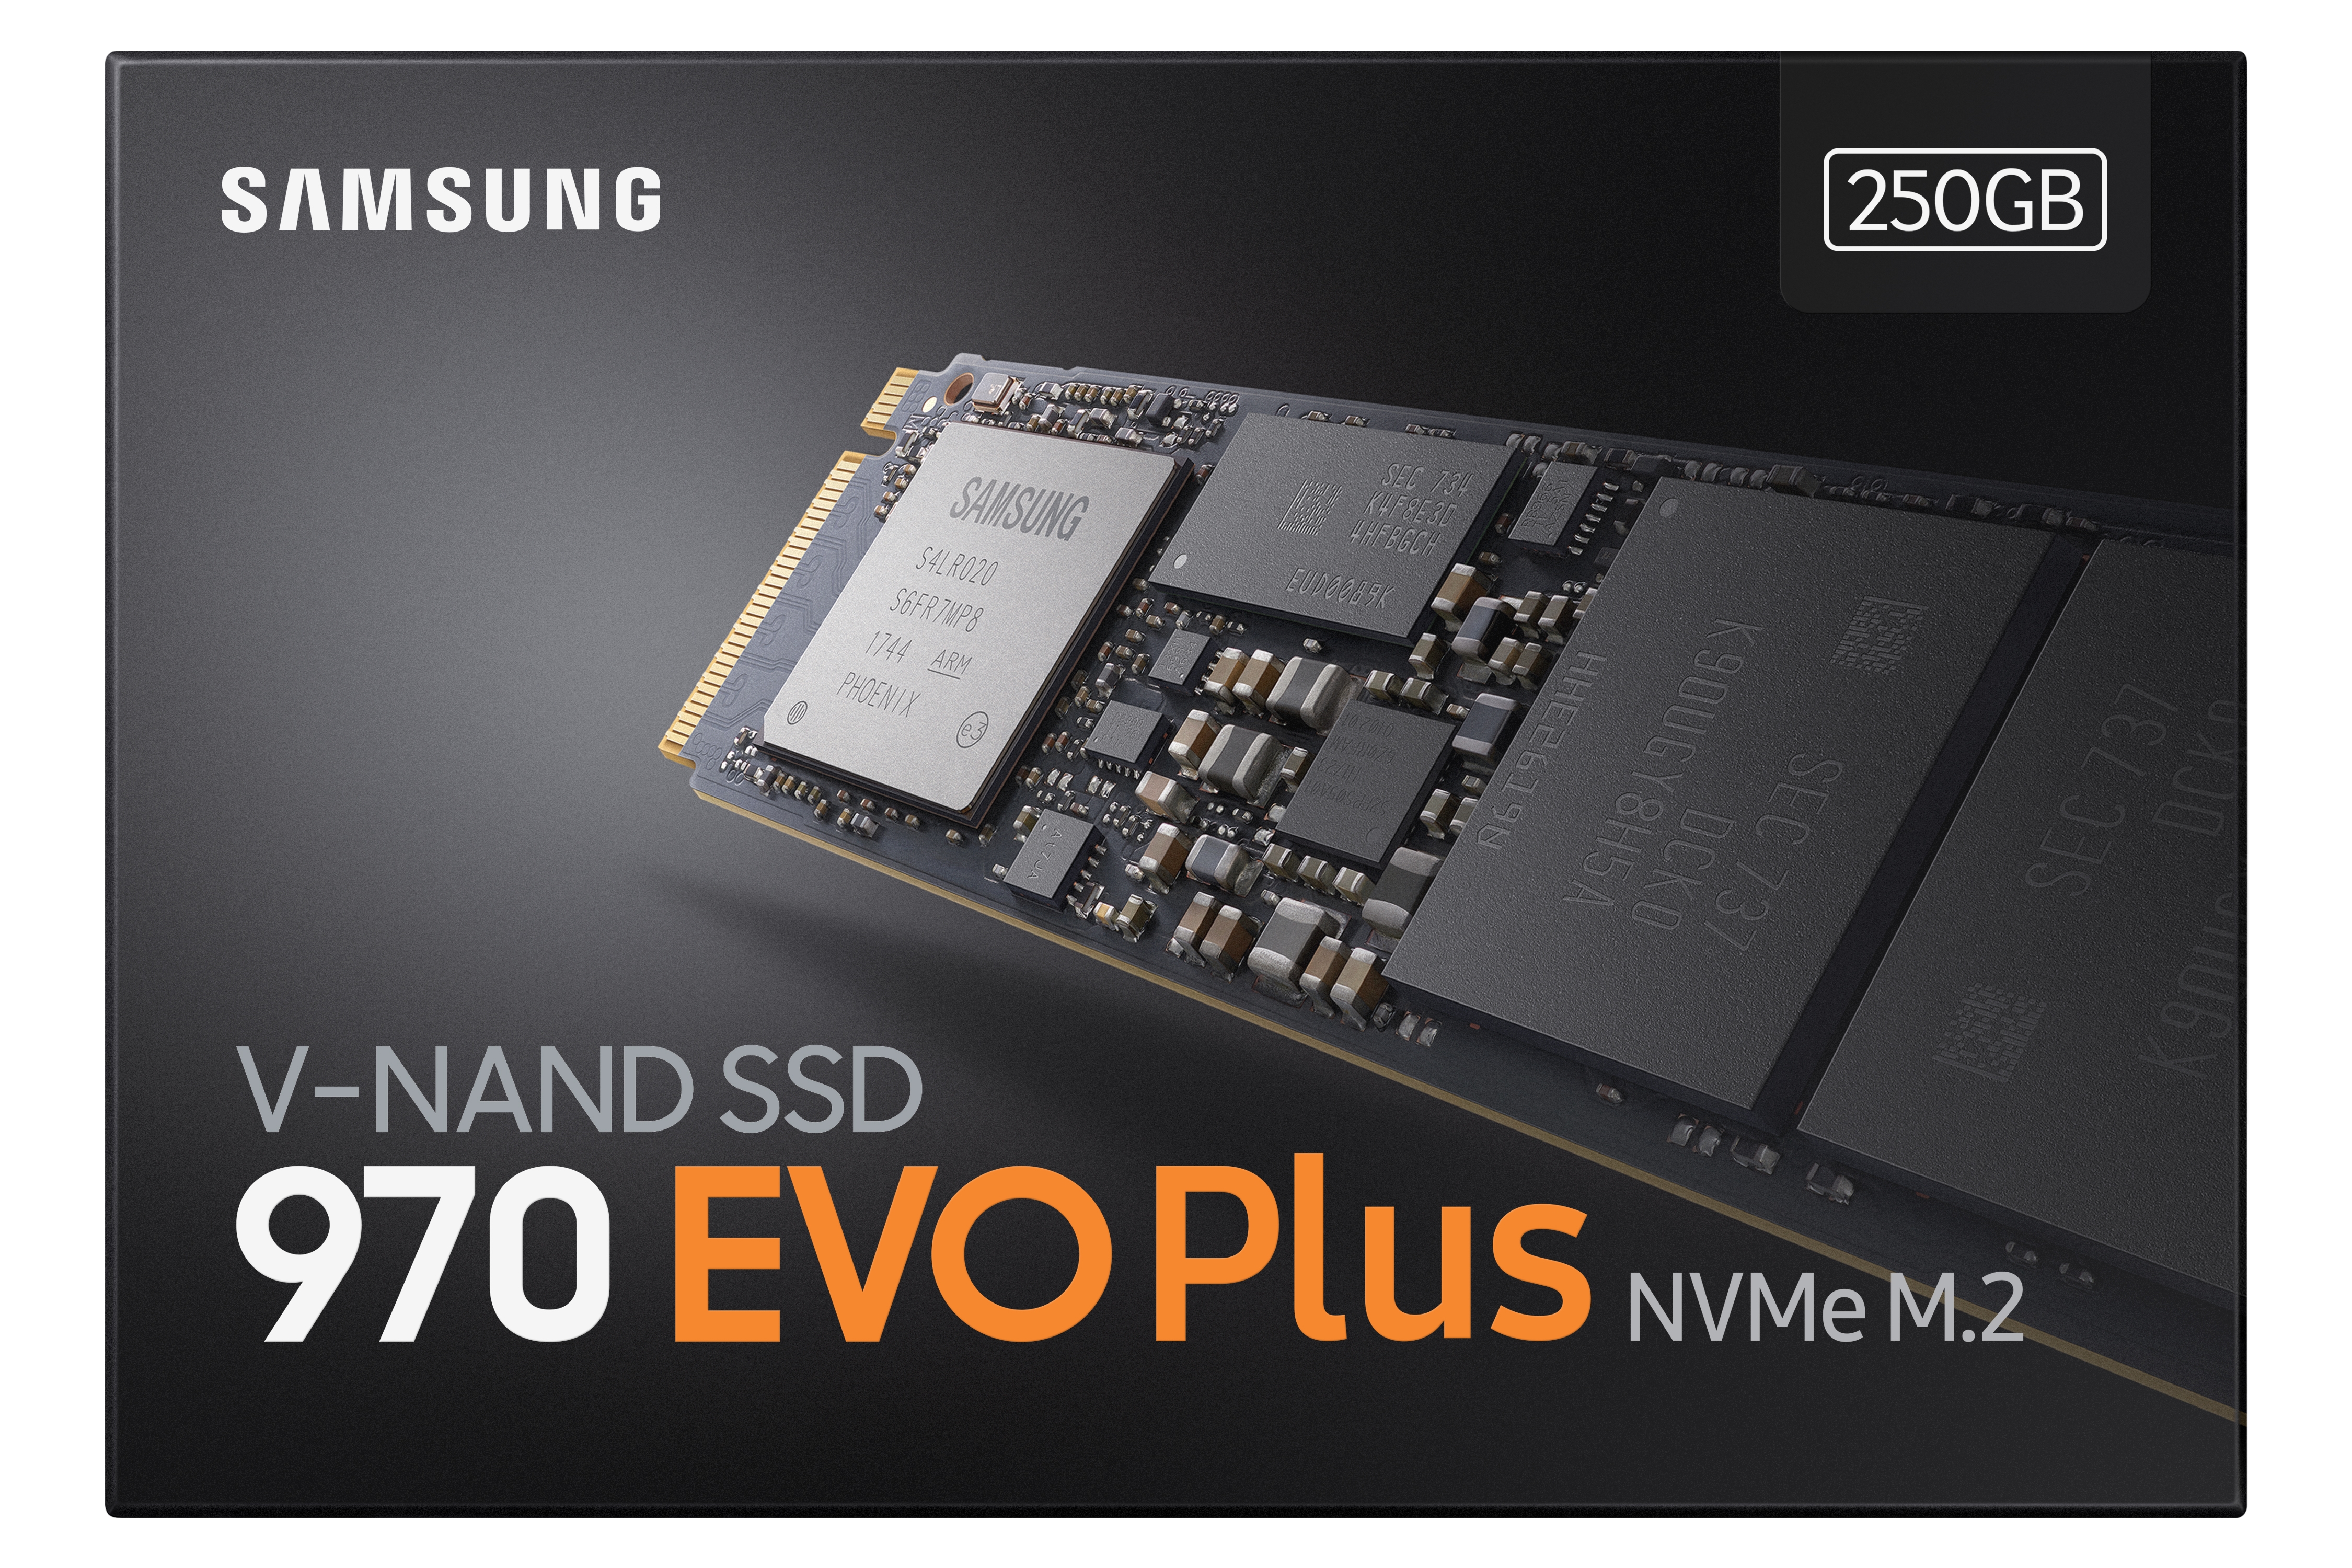 SSD 970 EVO Plus NVMe® M.2 250GB Memory & - MZ-V75S250B/AM | US